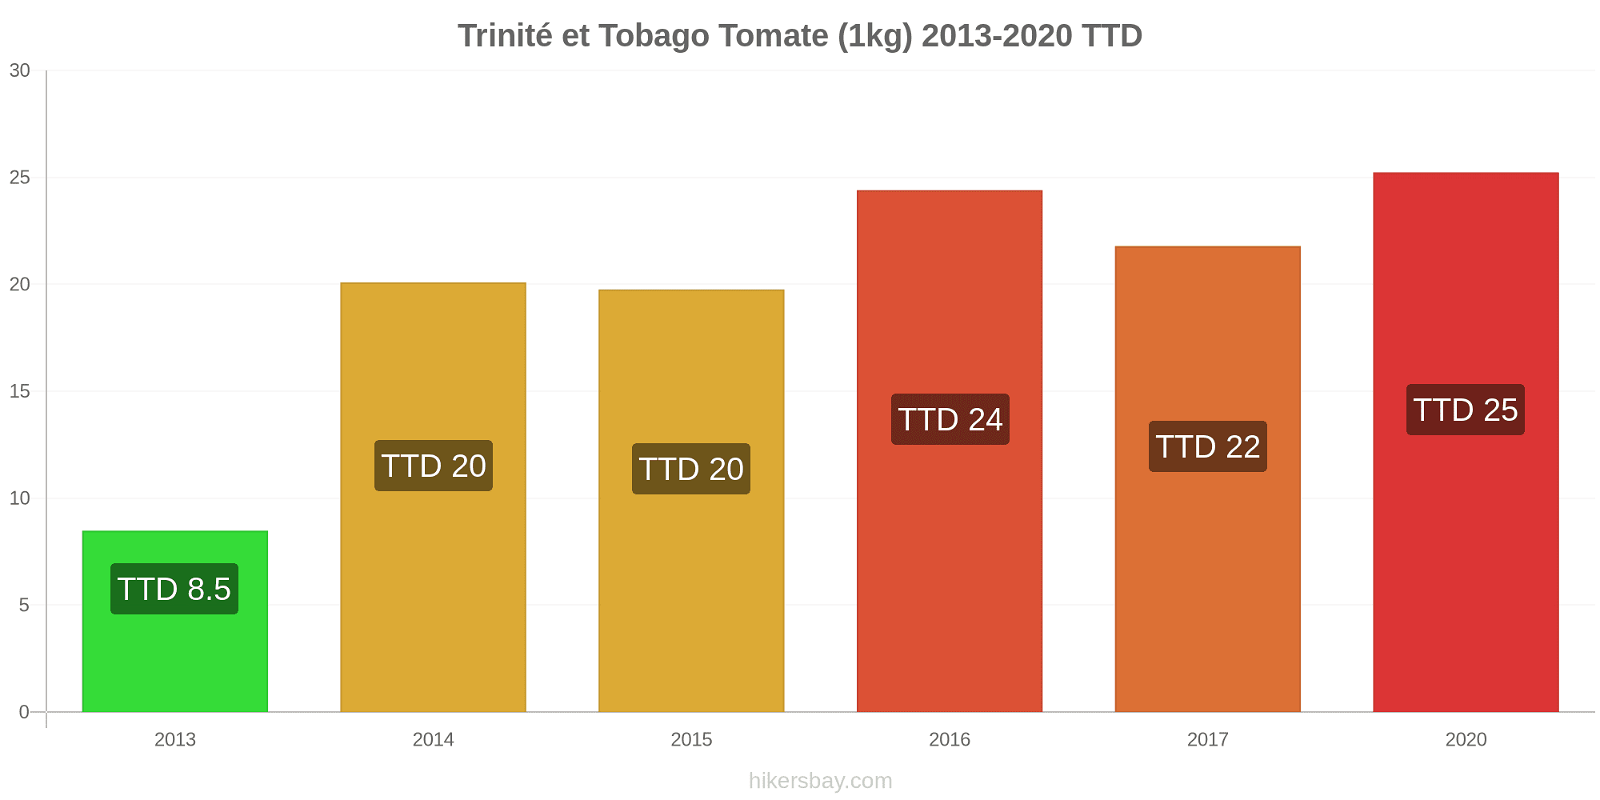 Trinité et Tobago changements de prix Tomate (1kg) hikersbay.com